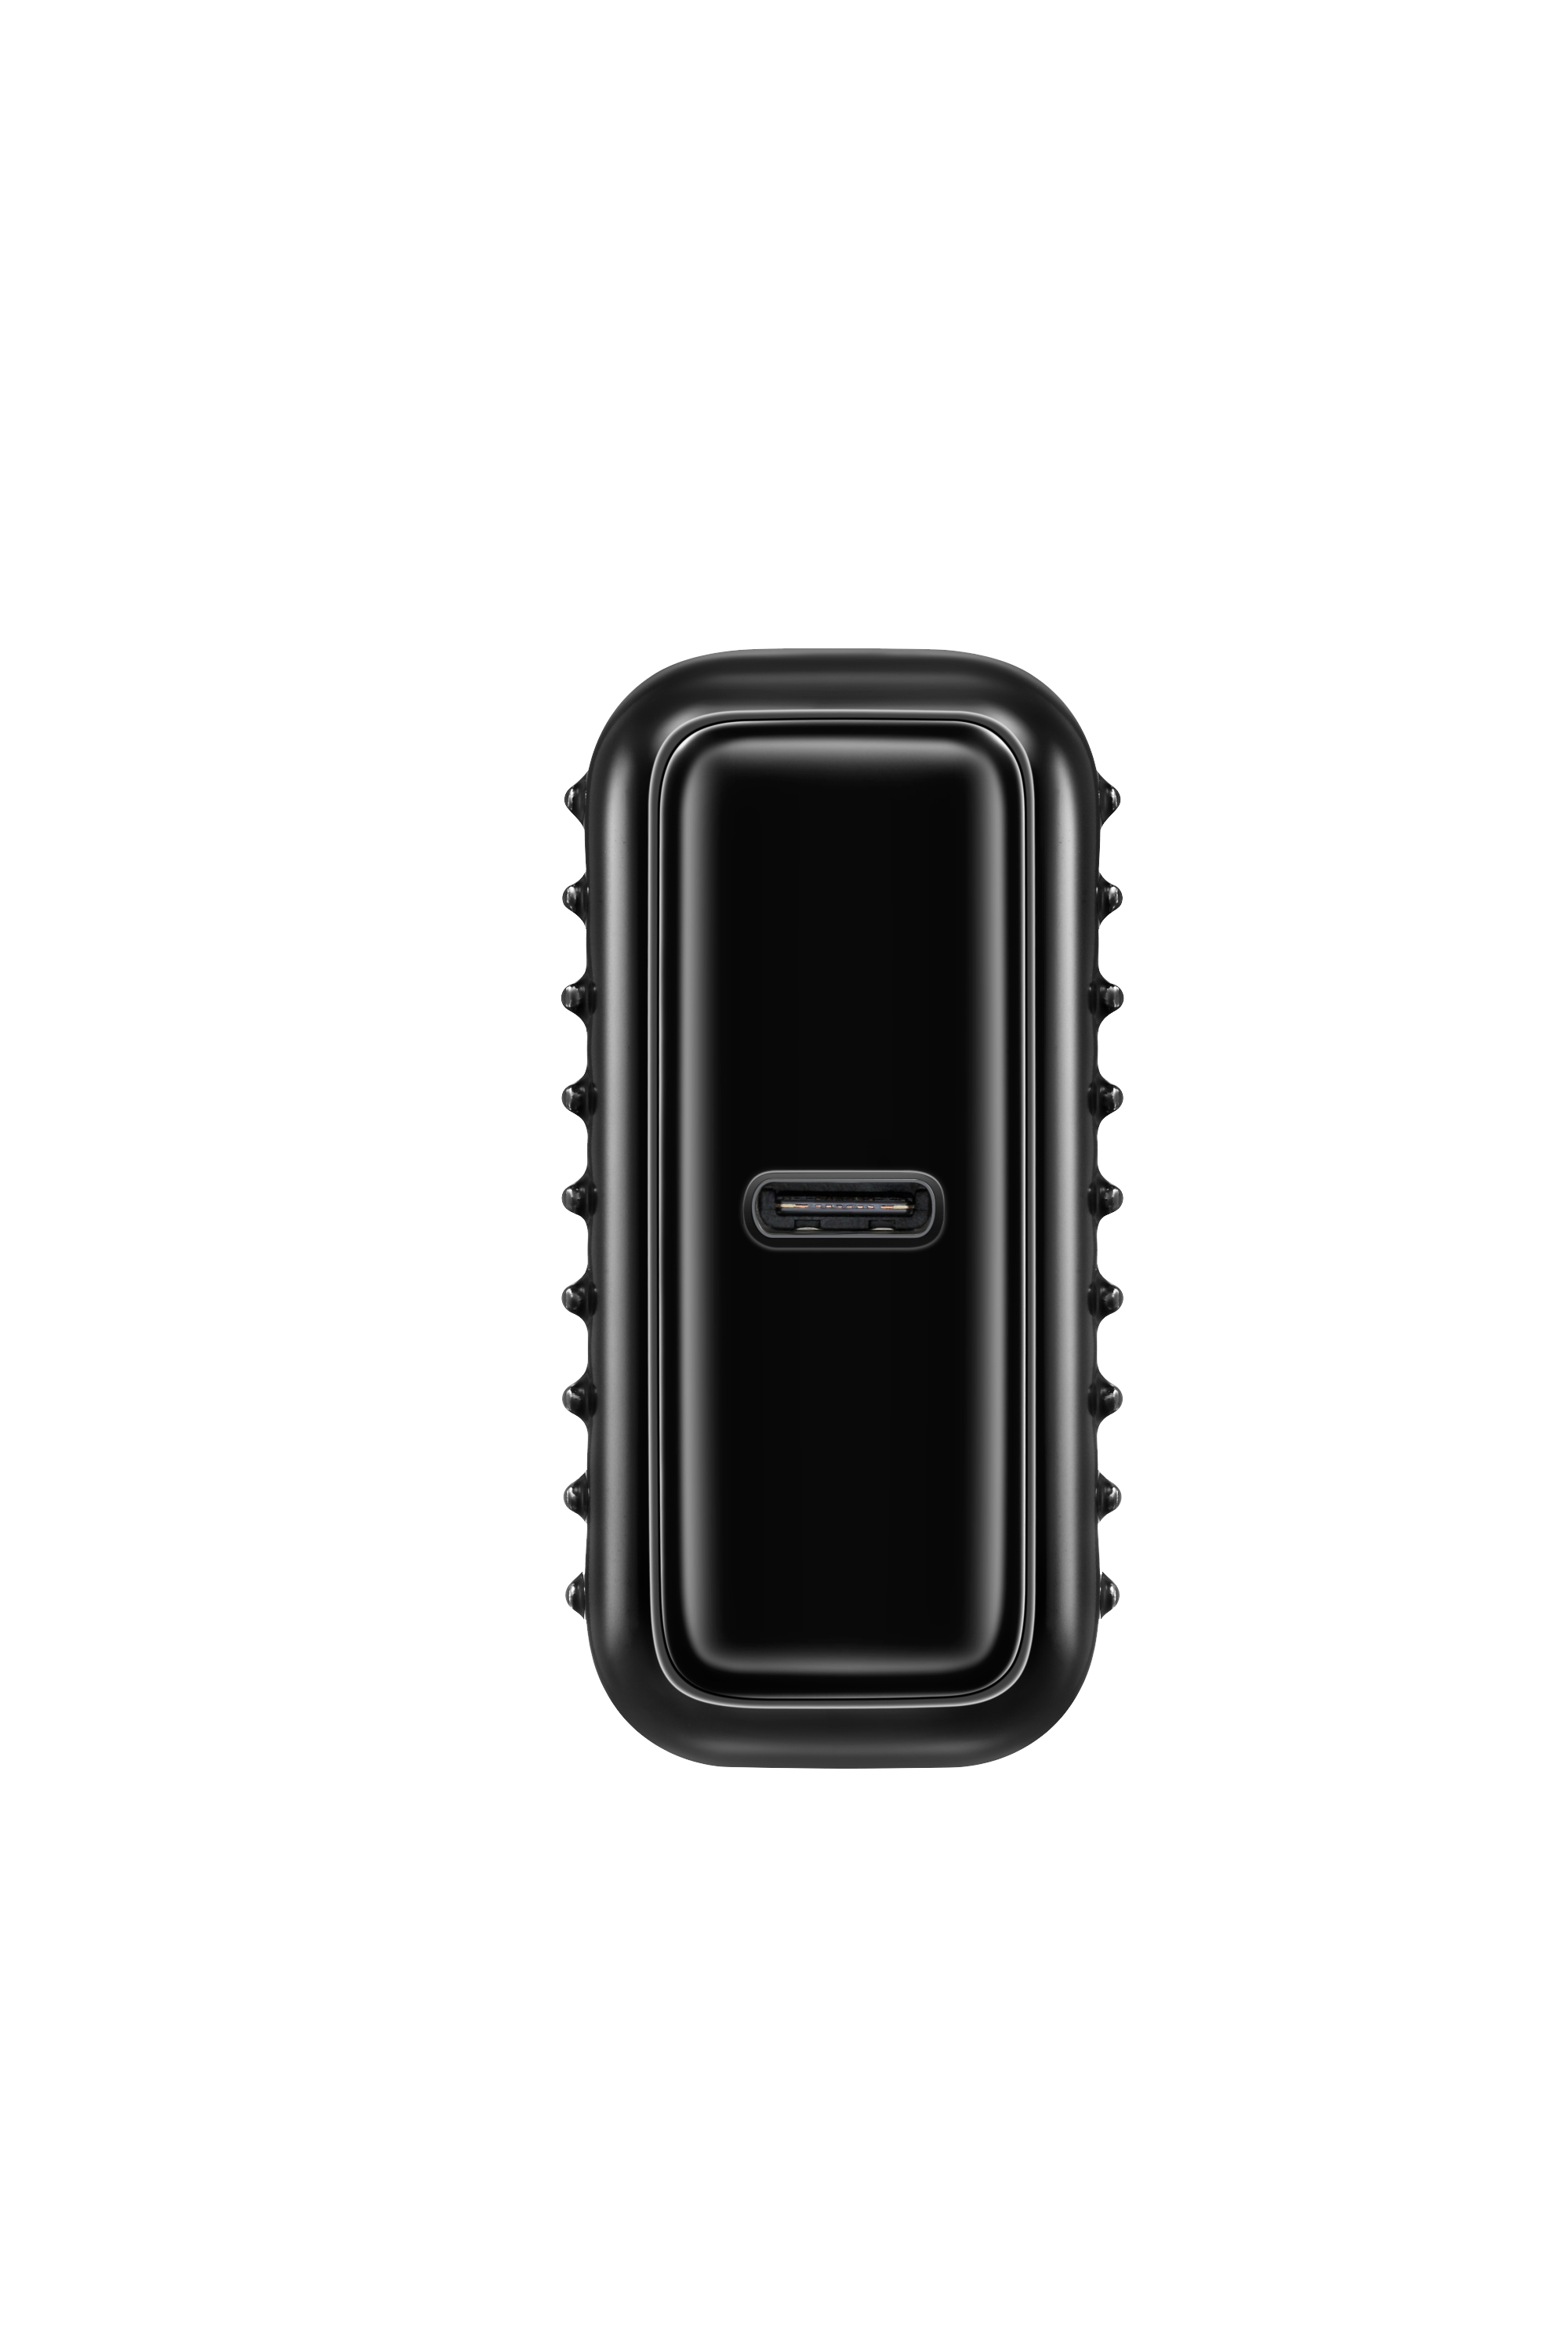 SuperMini 10,000mAh USB-C PD Portable Charger - Black